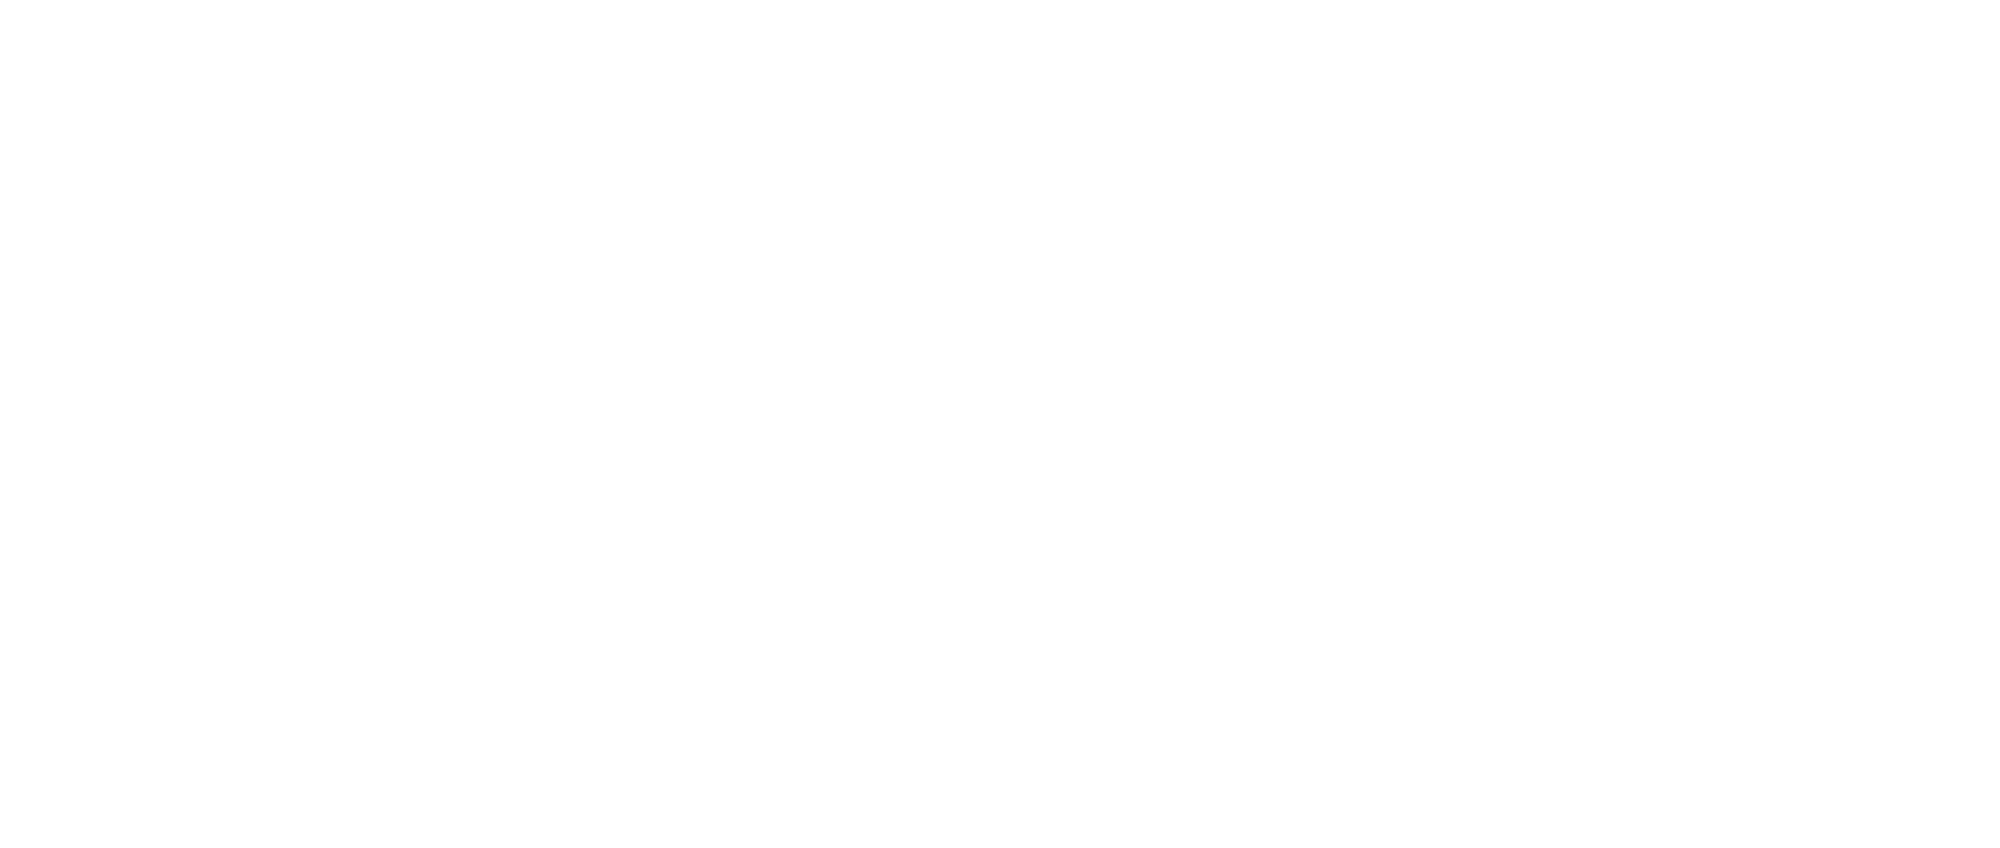 C. Sharpe Editions